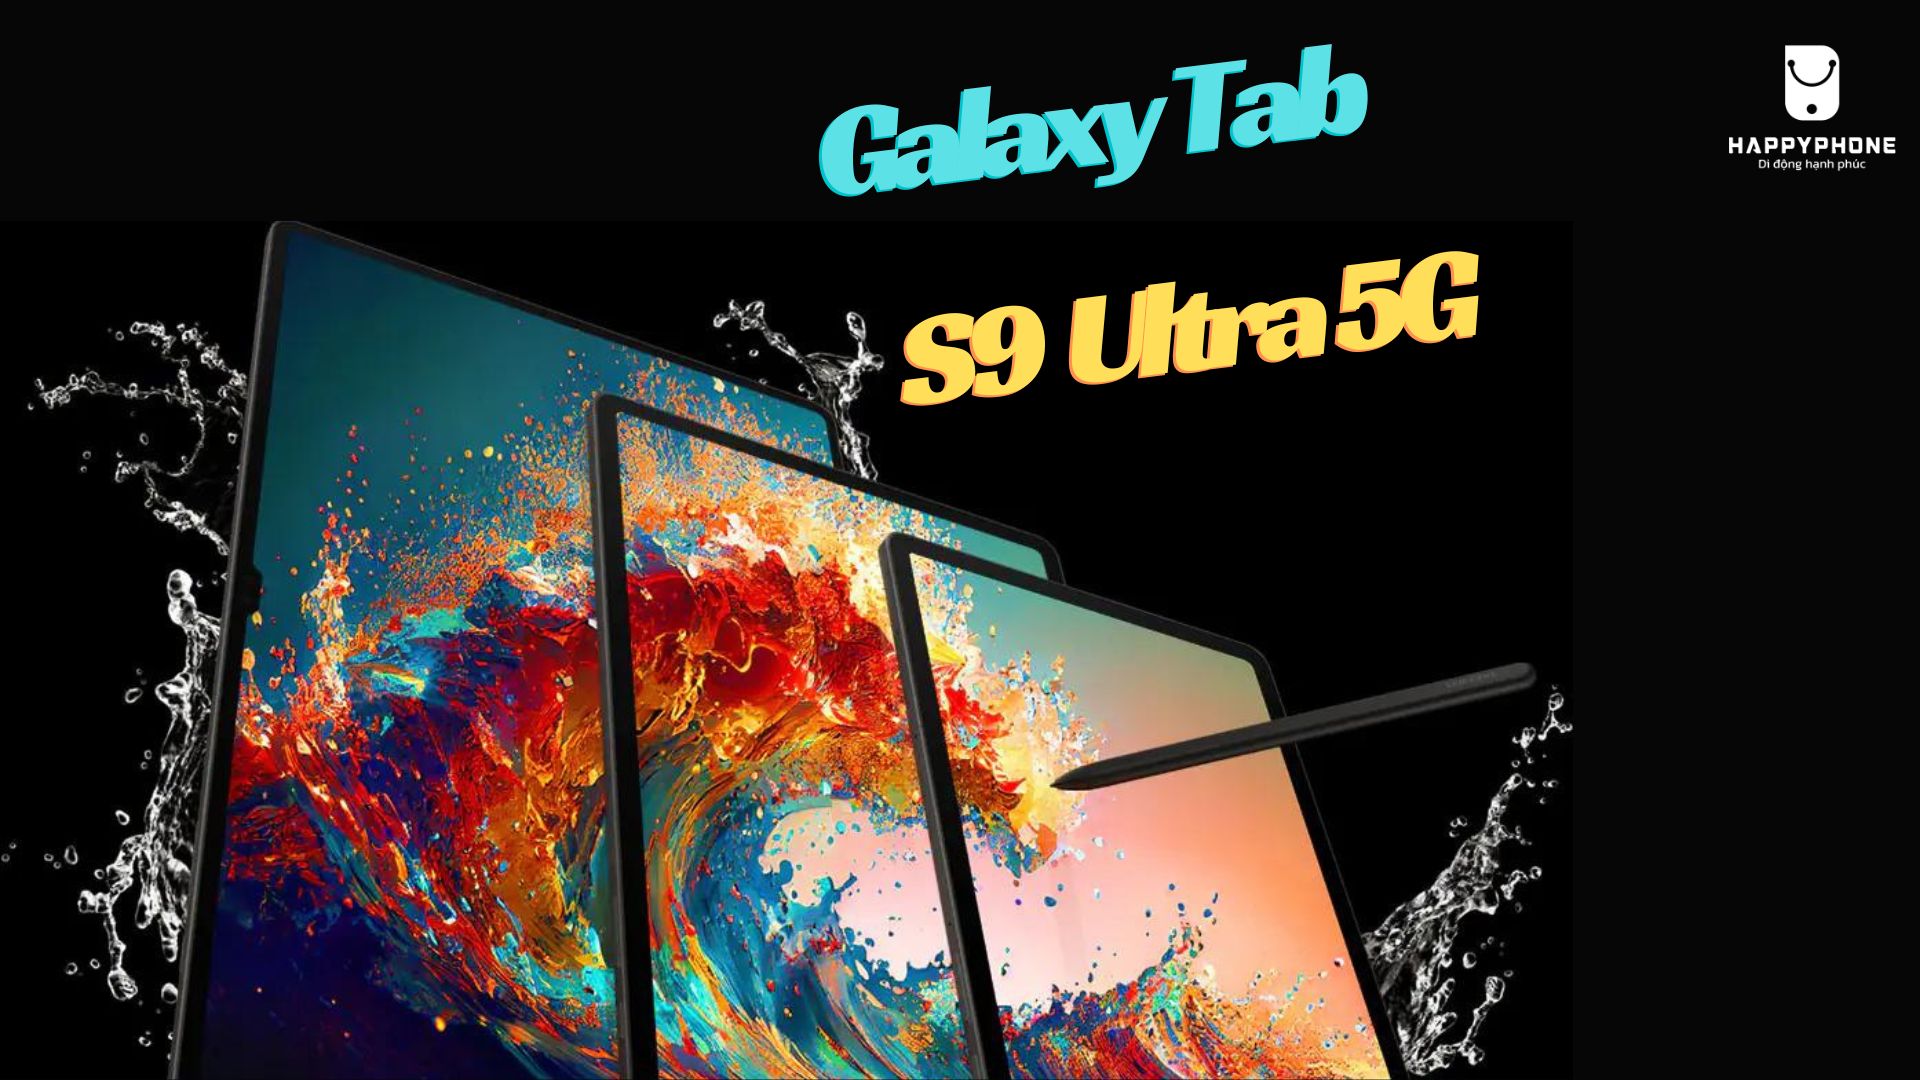 Thiết kế Galaxy Tab S9 Ultra 5G